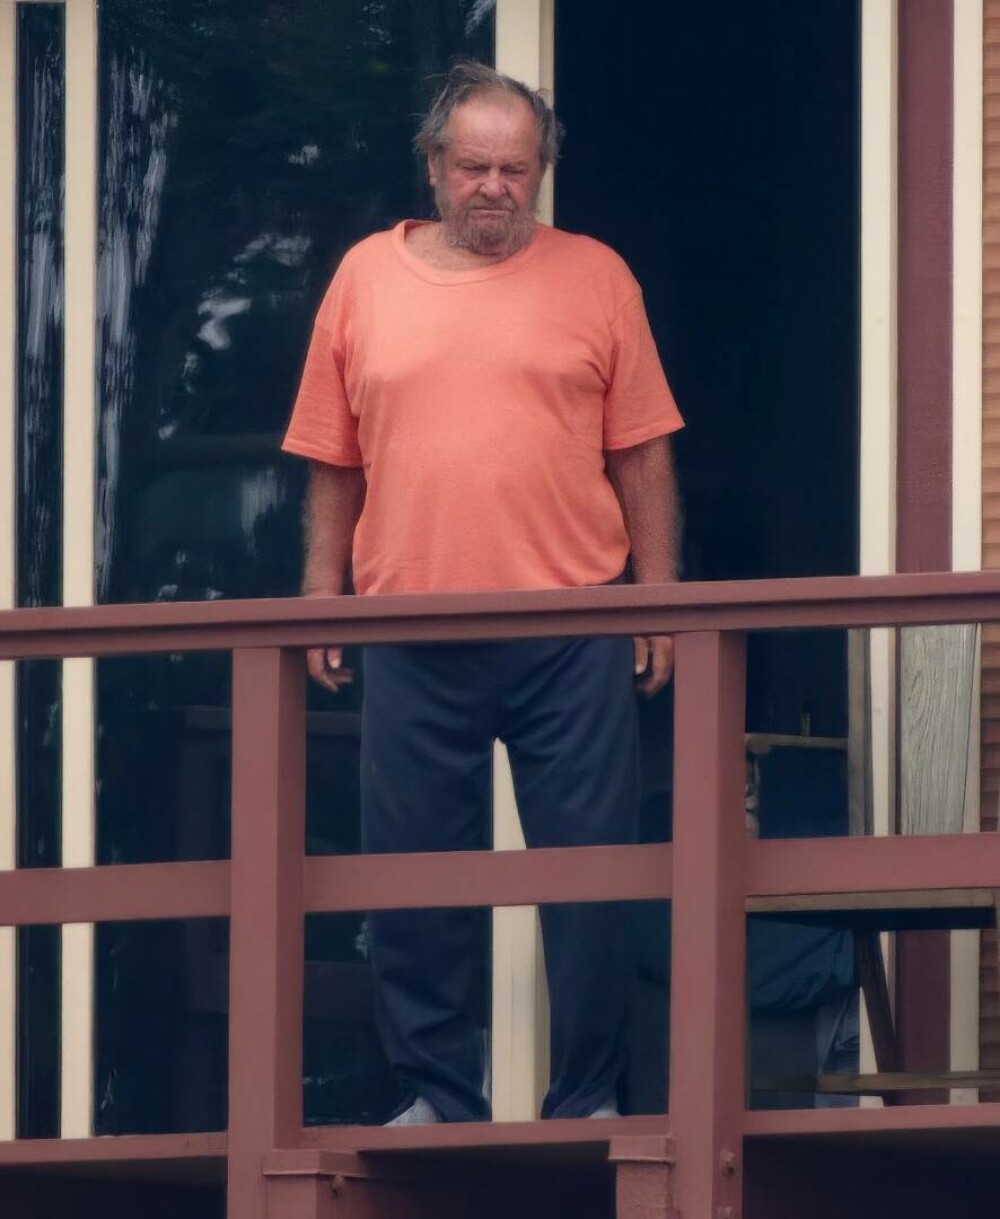 Jack Nicholson, prima apariție după 18 luni de izolare. Cum a fost surprins actorul pe balconul casei. FOTO - Imaginea 3